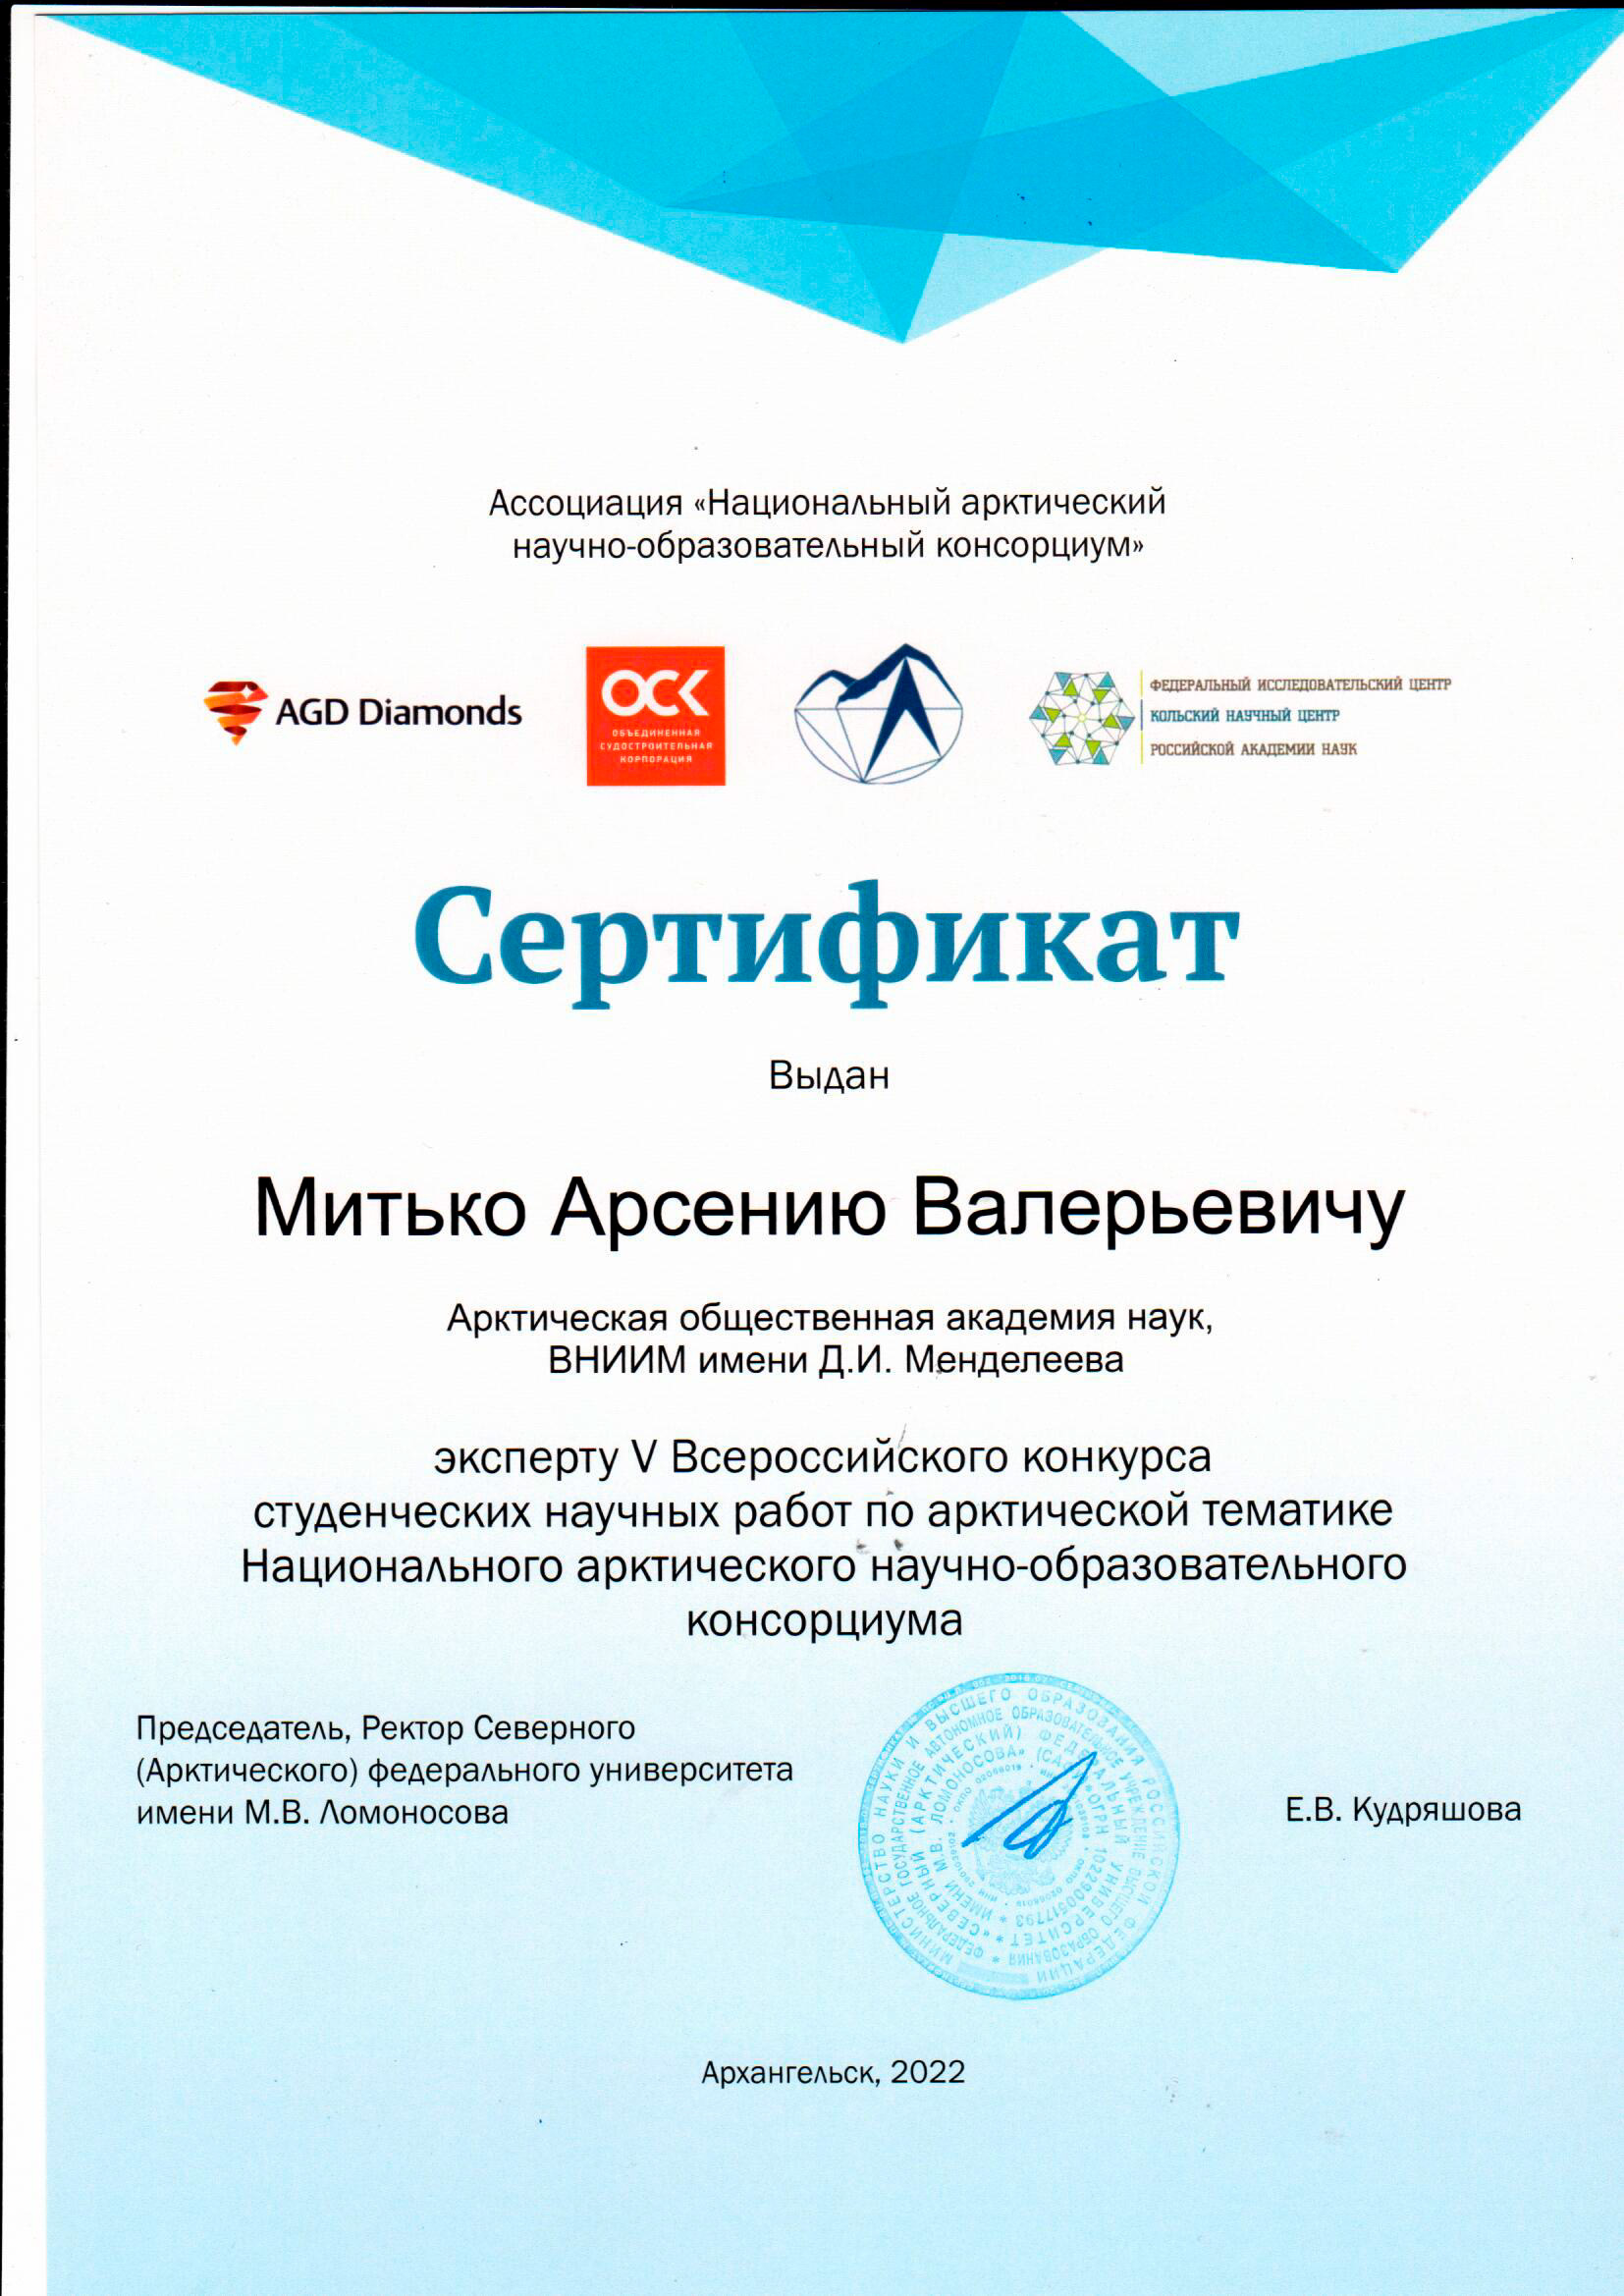 ВНИИМ им. Д. И. Менделеева принял участие в проекте Национального арктического научно-образовательного консорциума